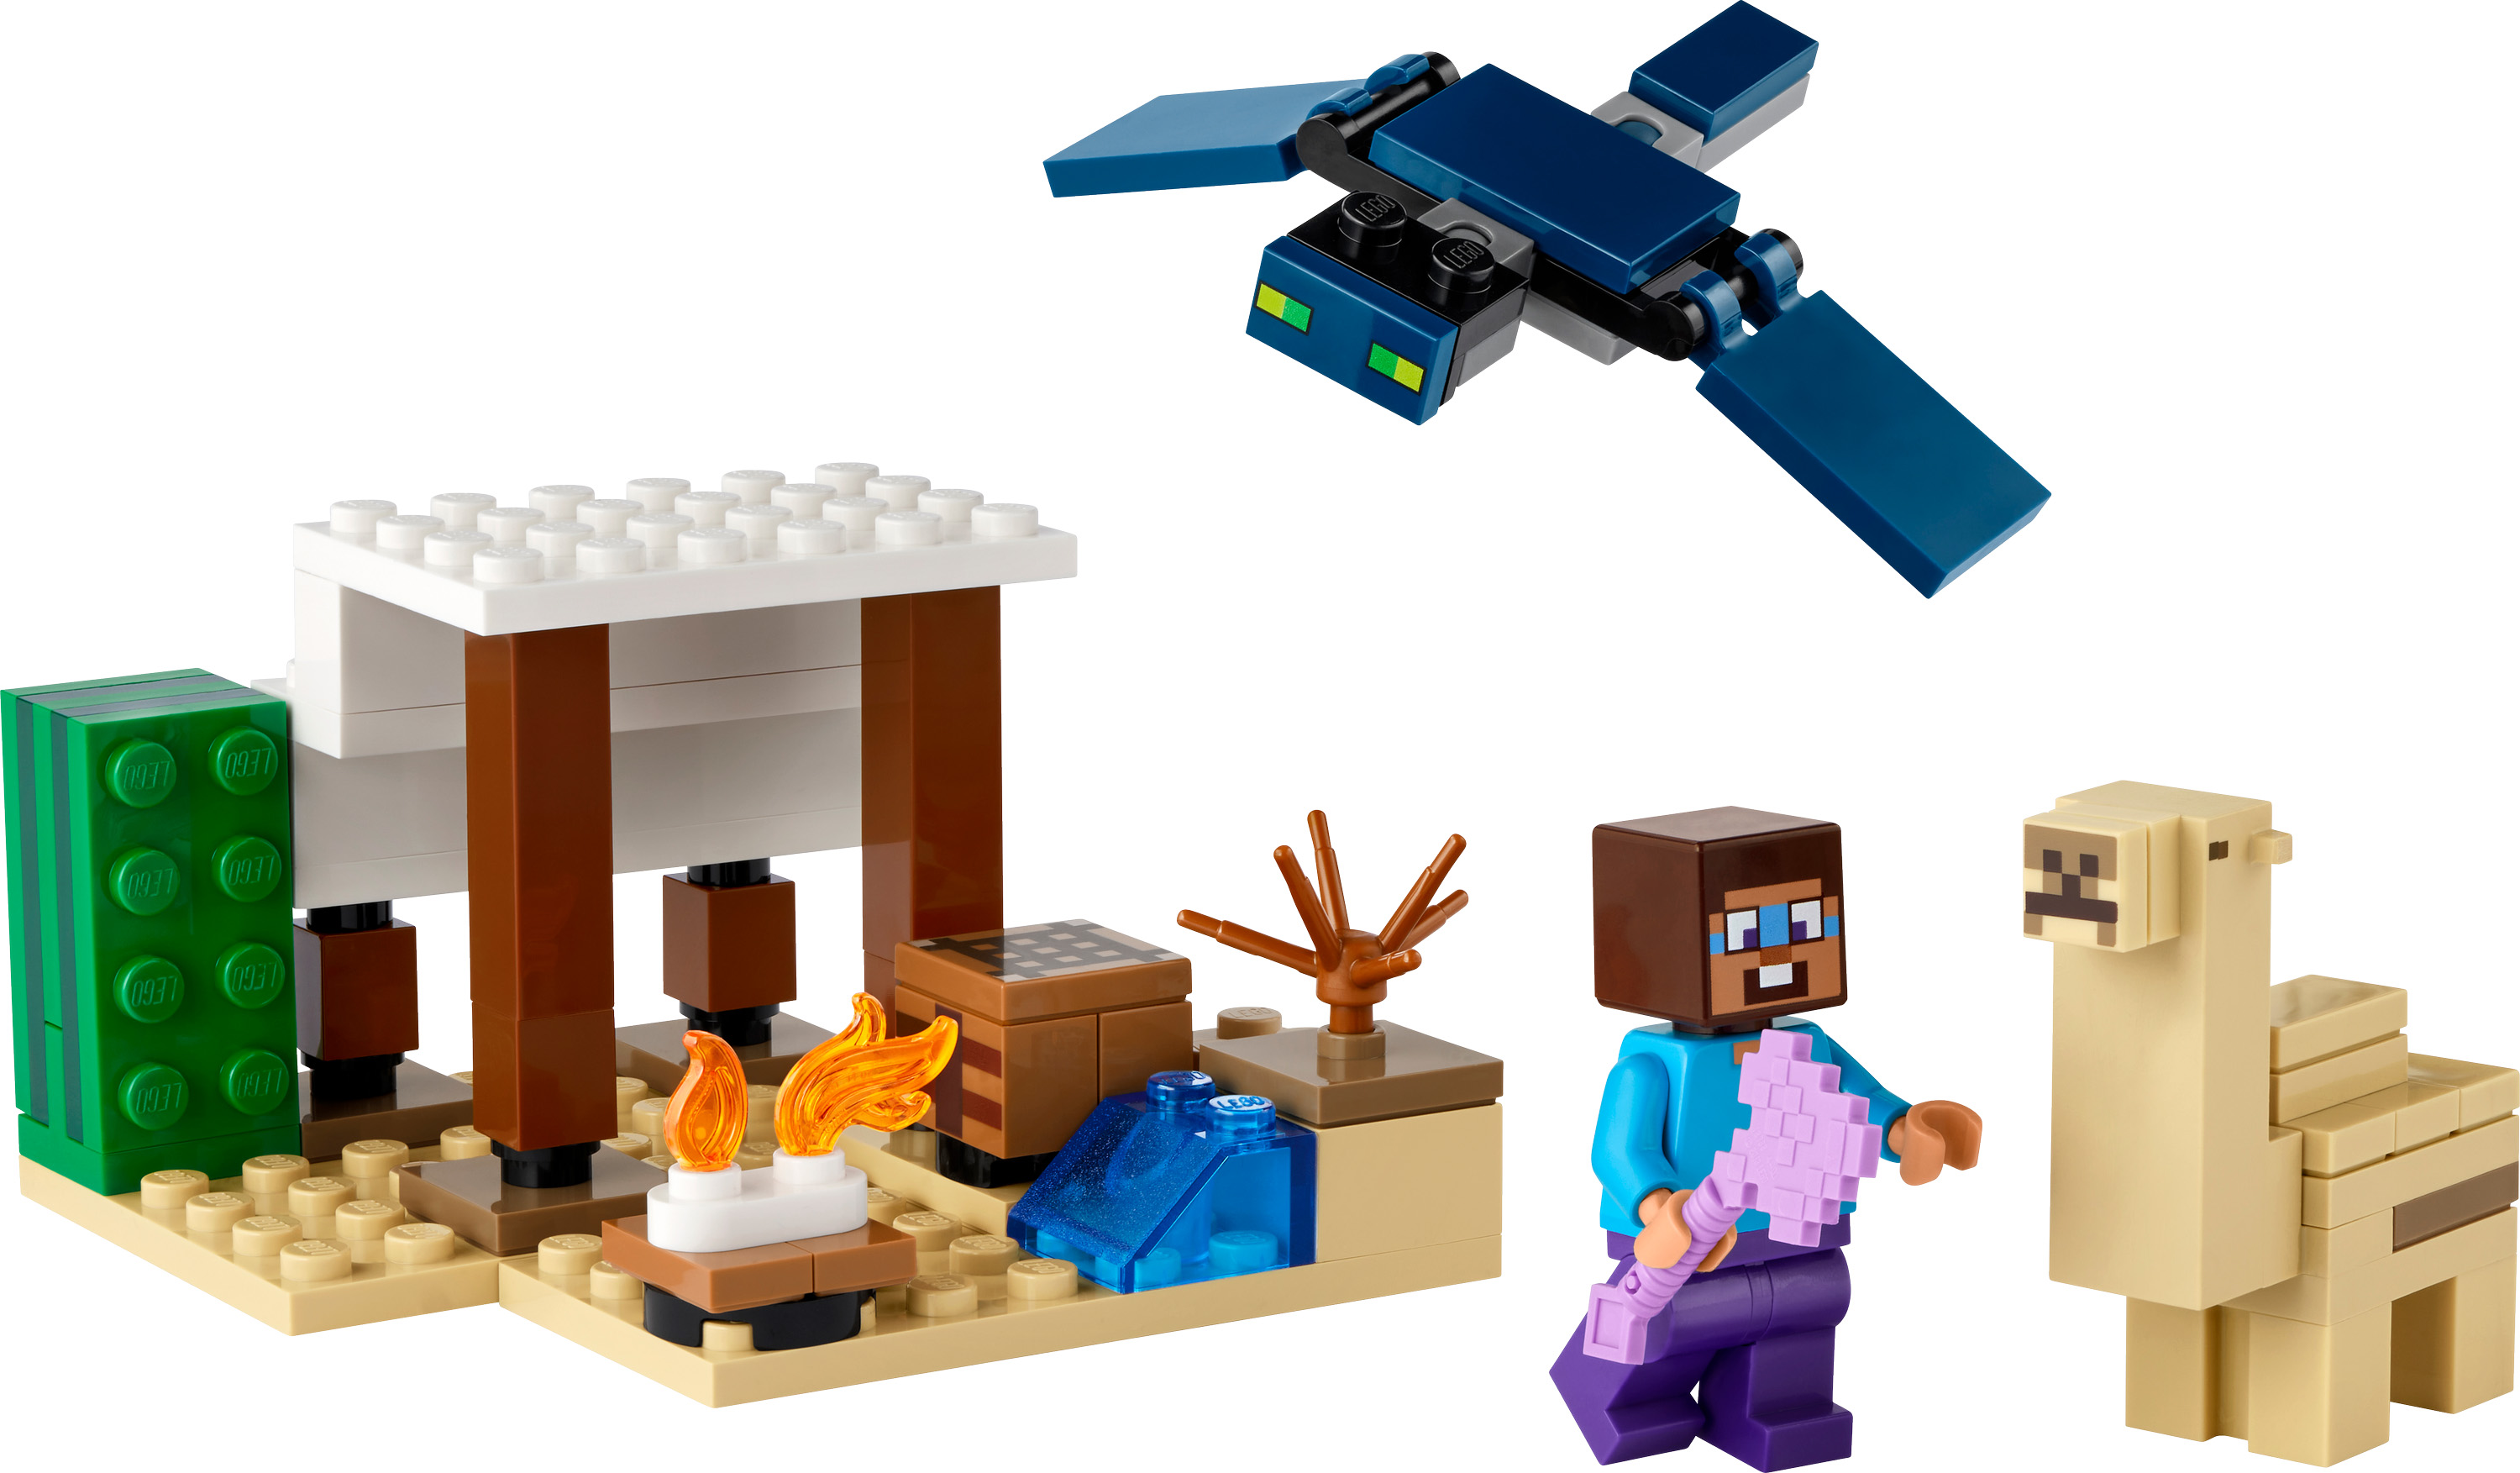 Конструктор LEGO Minecraft Експедиція Стіва в пустелю 75 деталей (21251) - фото 2